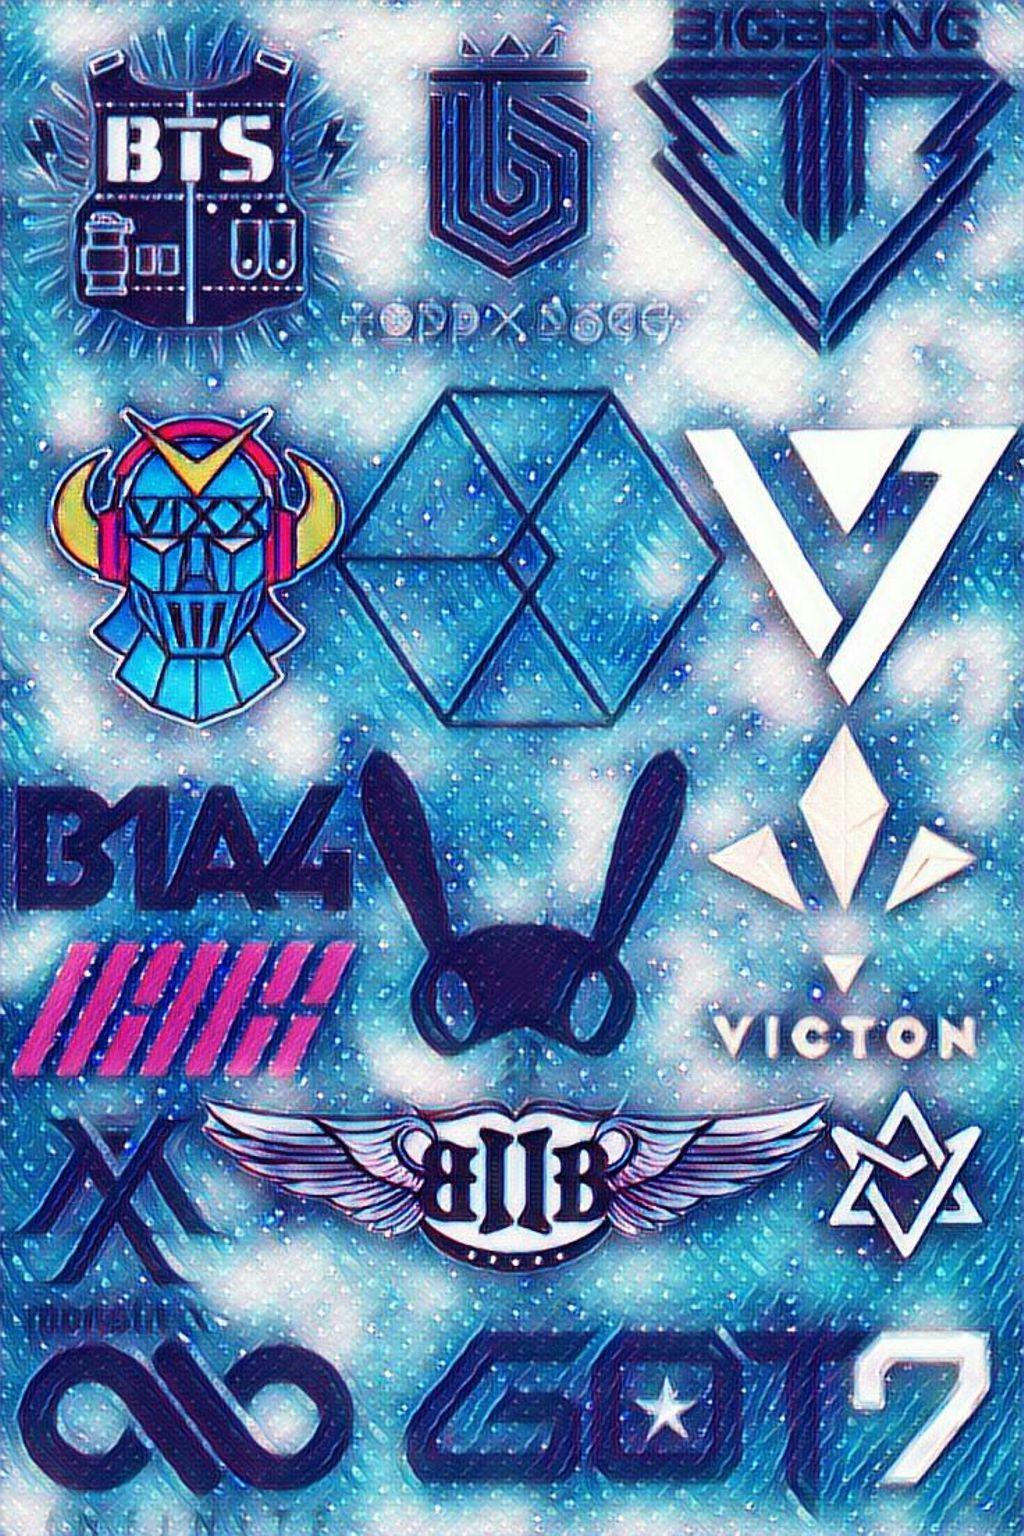 Bap Kpop Logo - Kpop logo toppdogg bap btob bts ikon bigbang exo got7...